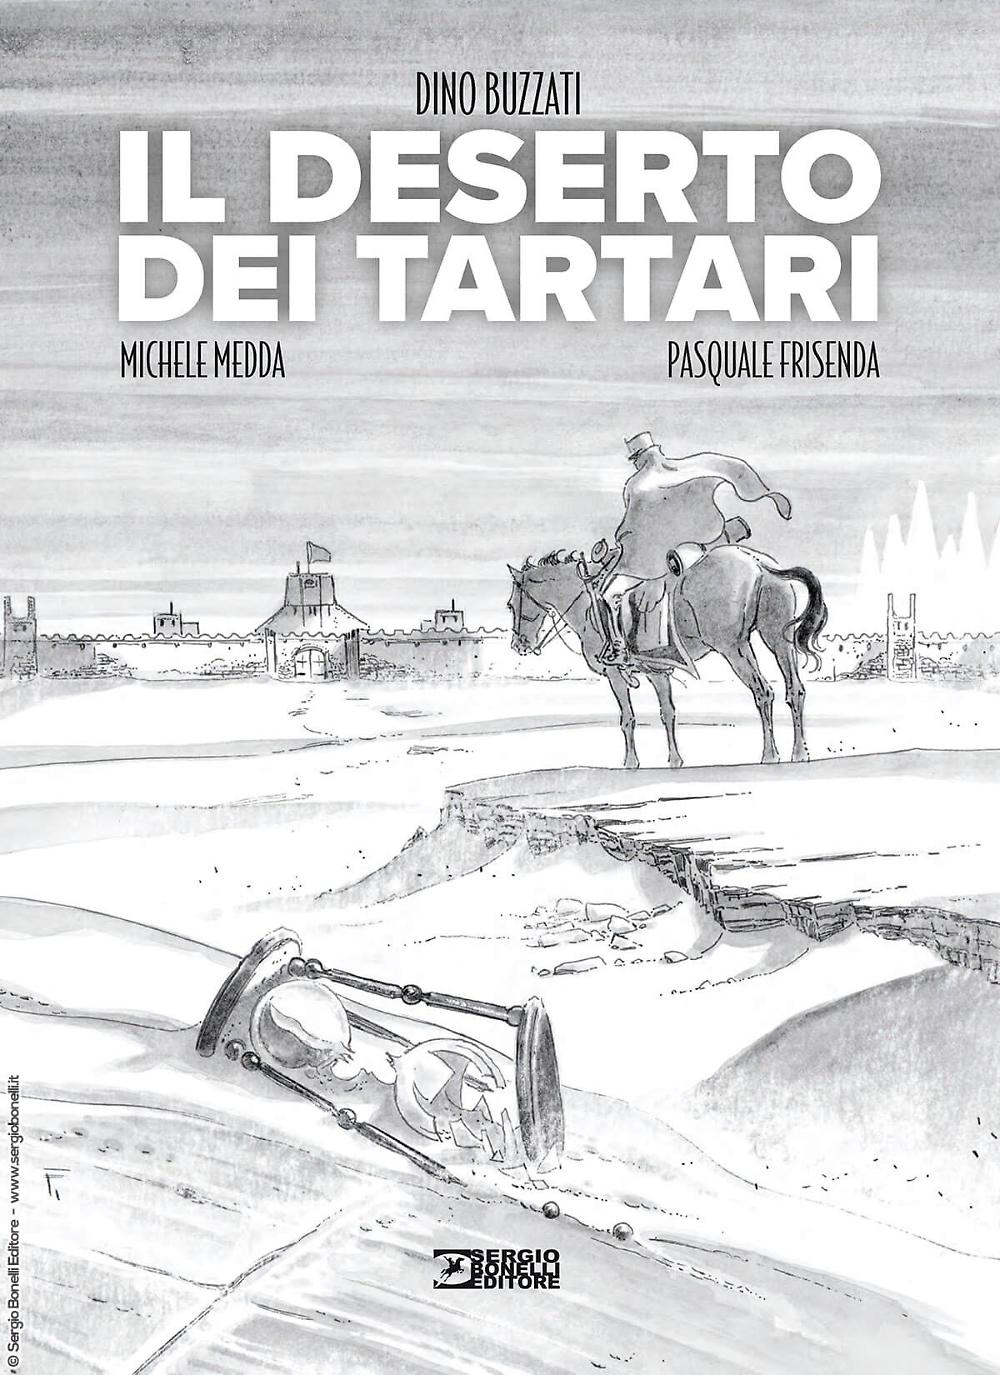 Dino Buzzati, Michele Medda, Pasquale Frisenda: Il deserto dei tartari (Hardcover, Italiano language, 2024, Sergio Bonelli Editore)